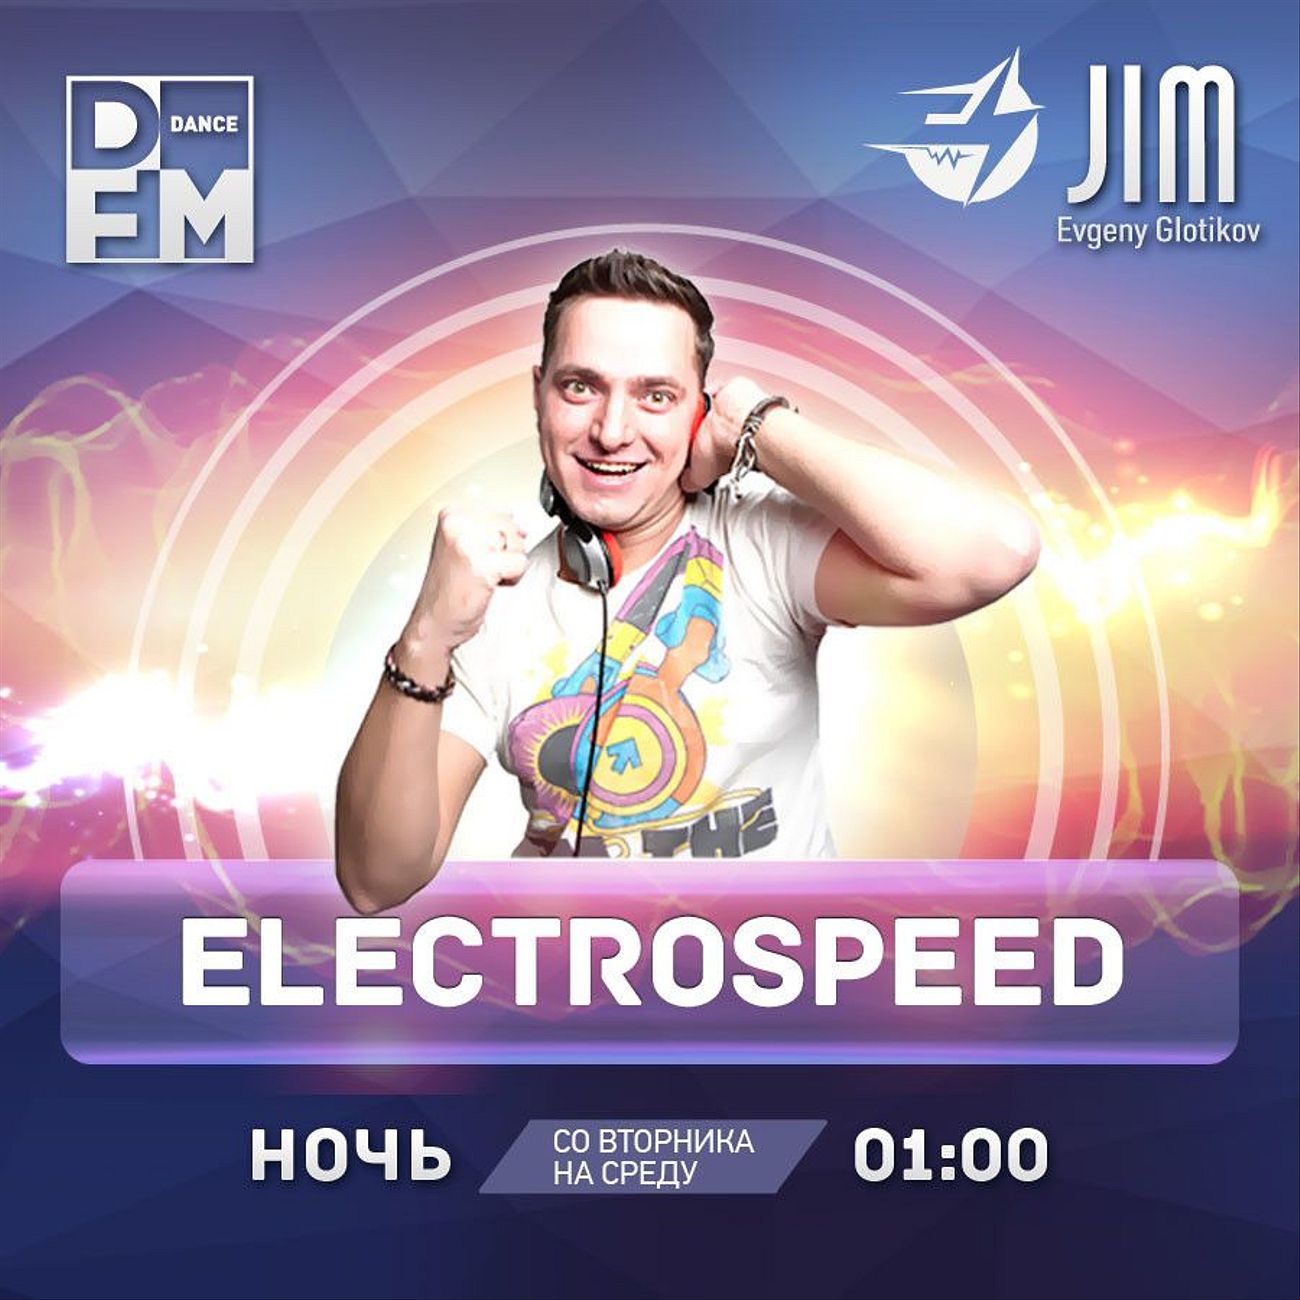 DJ JIM / ELECTROSPEED